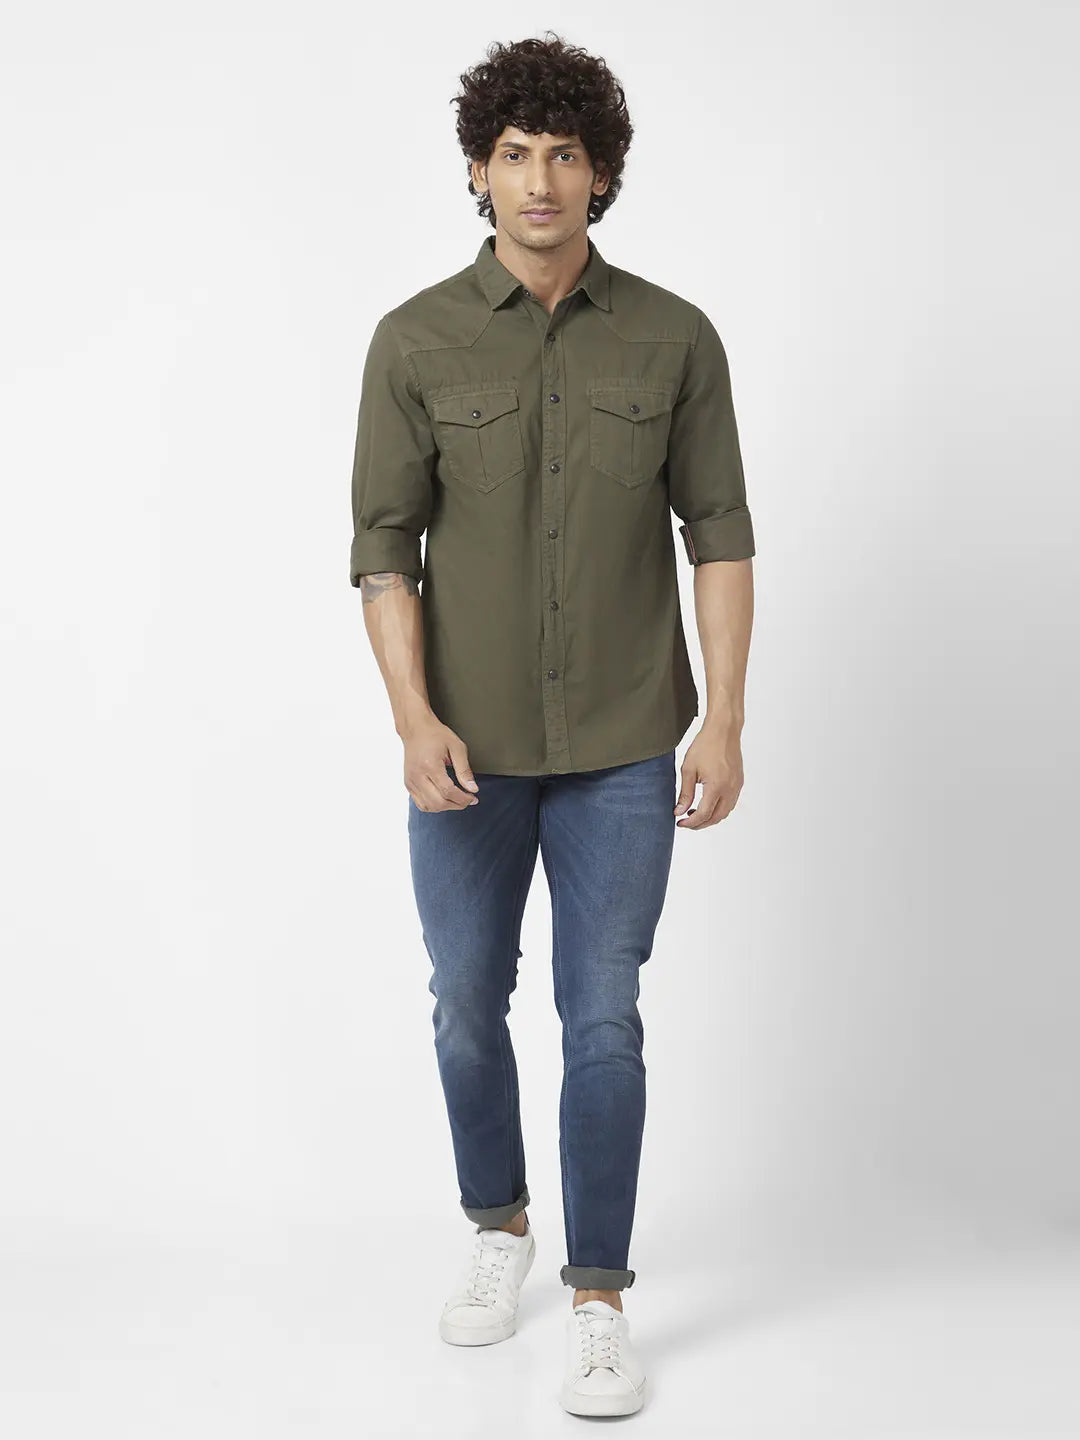 Mustard double pocket denim shirt for men's – Albatross Clothing